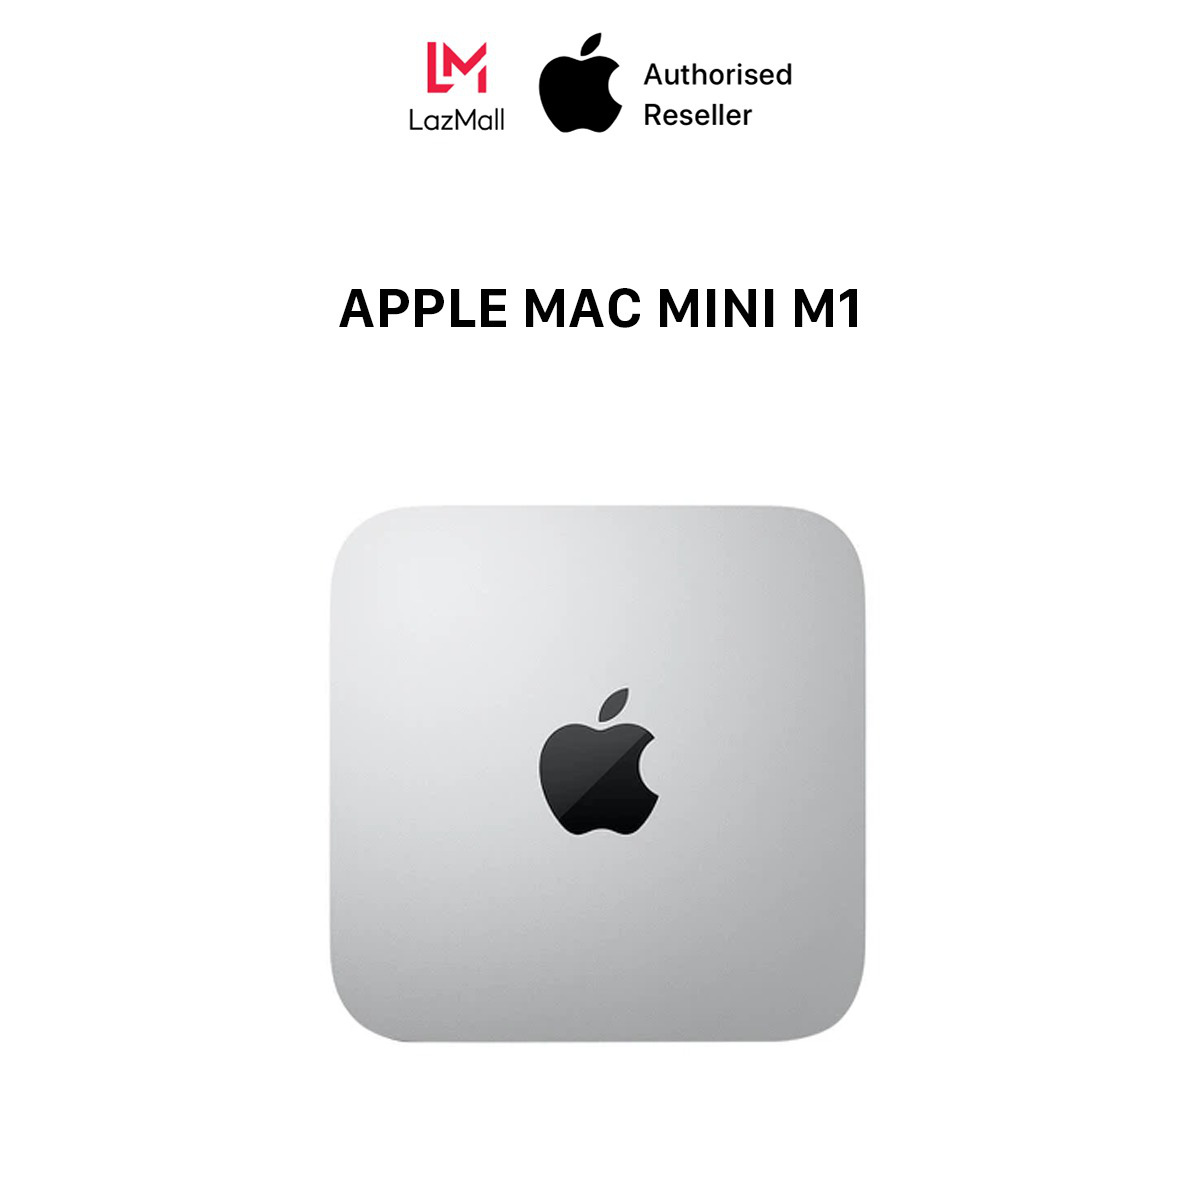 Loạt đồ công nghệ sale khủng ngày Cyber Monday, Apple Mac Mini M1 giá chỉ bằng nửa iPhone 13 Pro Max - Ảnh 1.